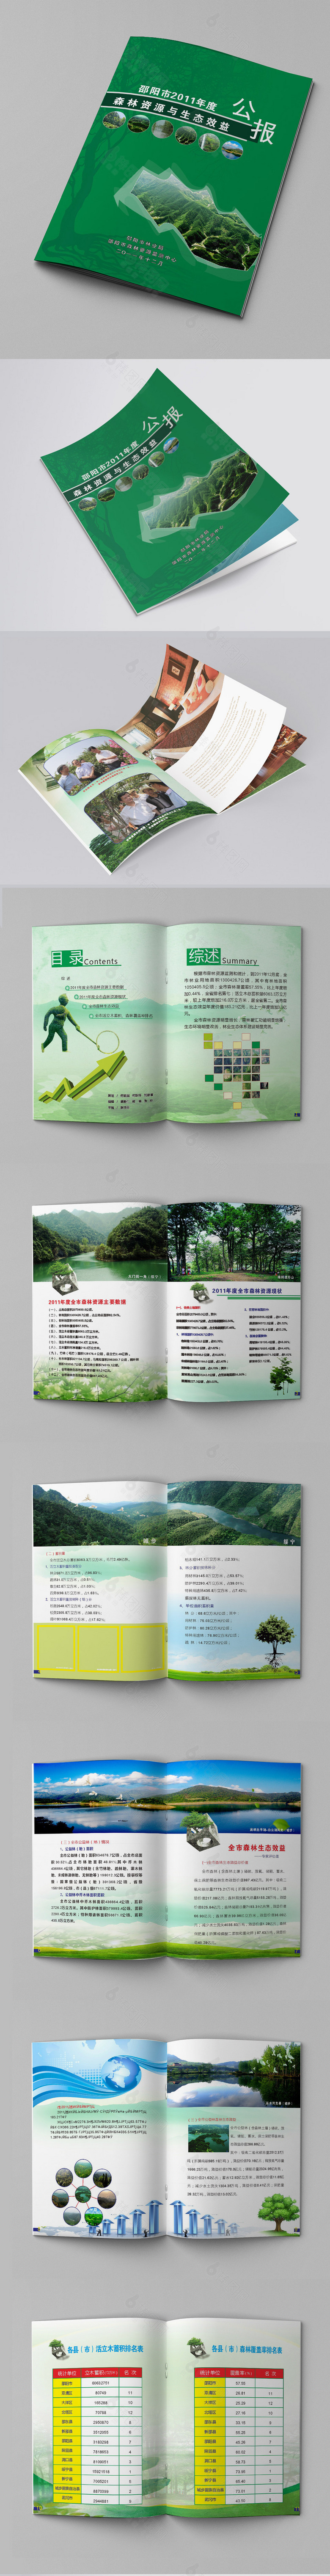 生态环保宣传画册